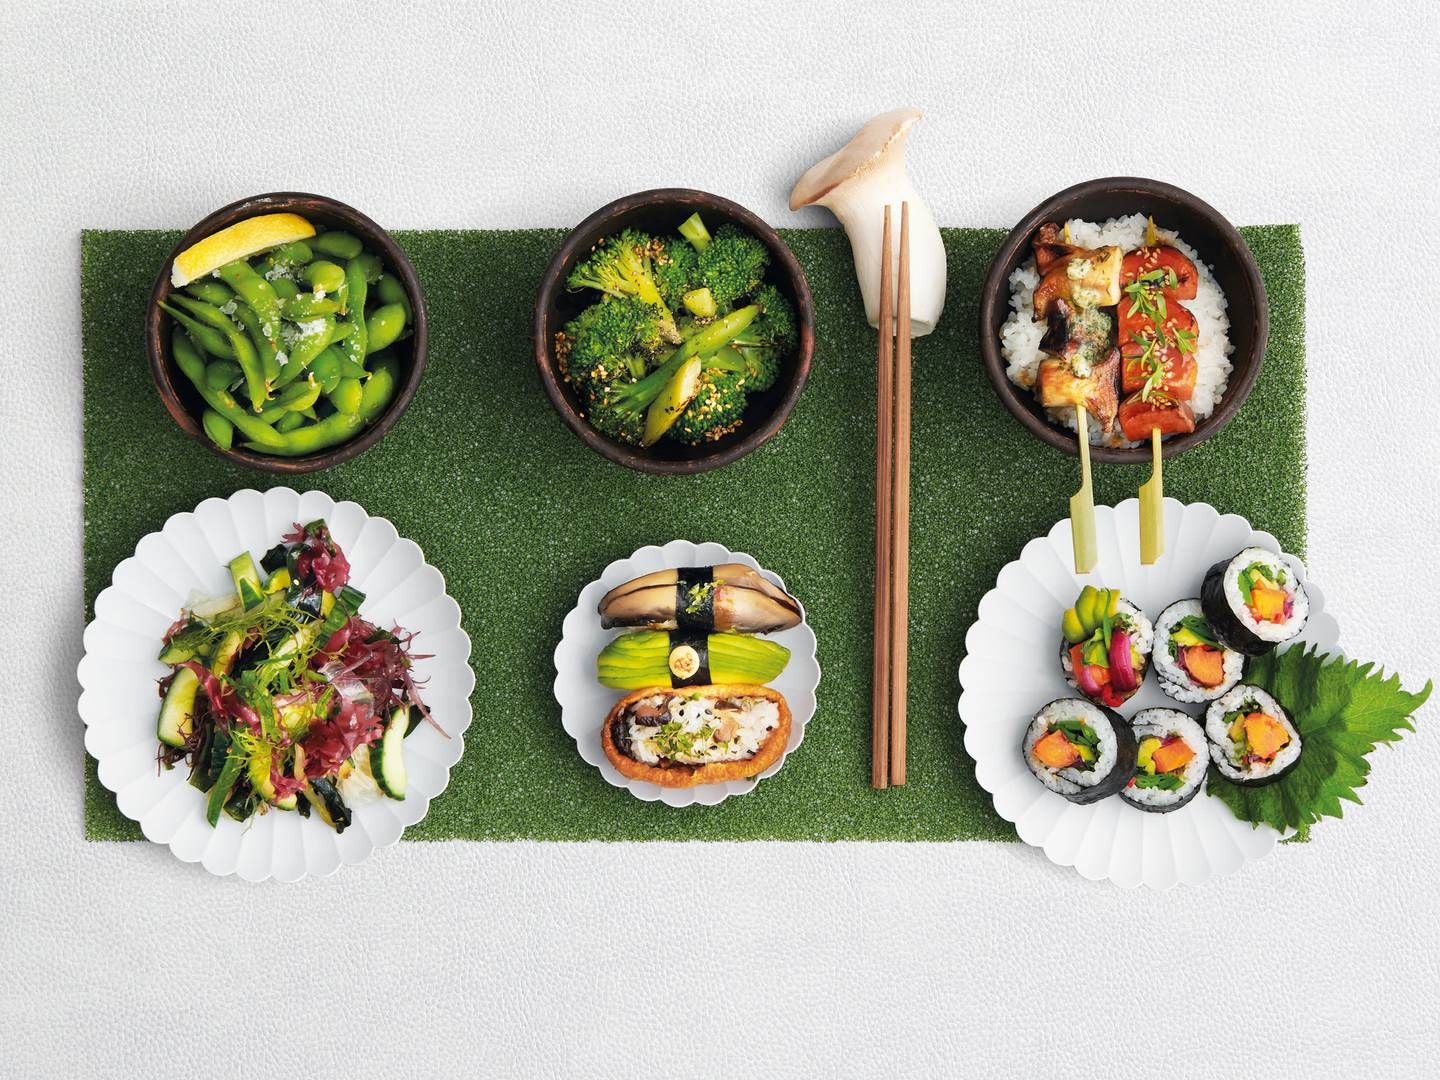 Foto: Sticks'n'sushi / Pr